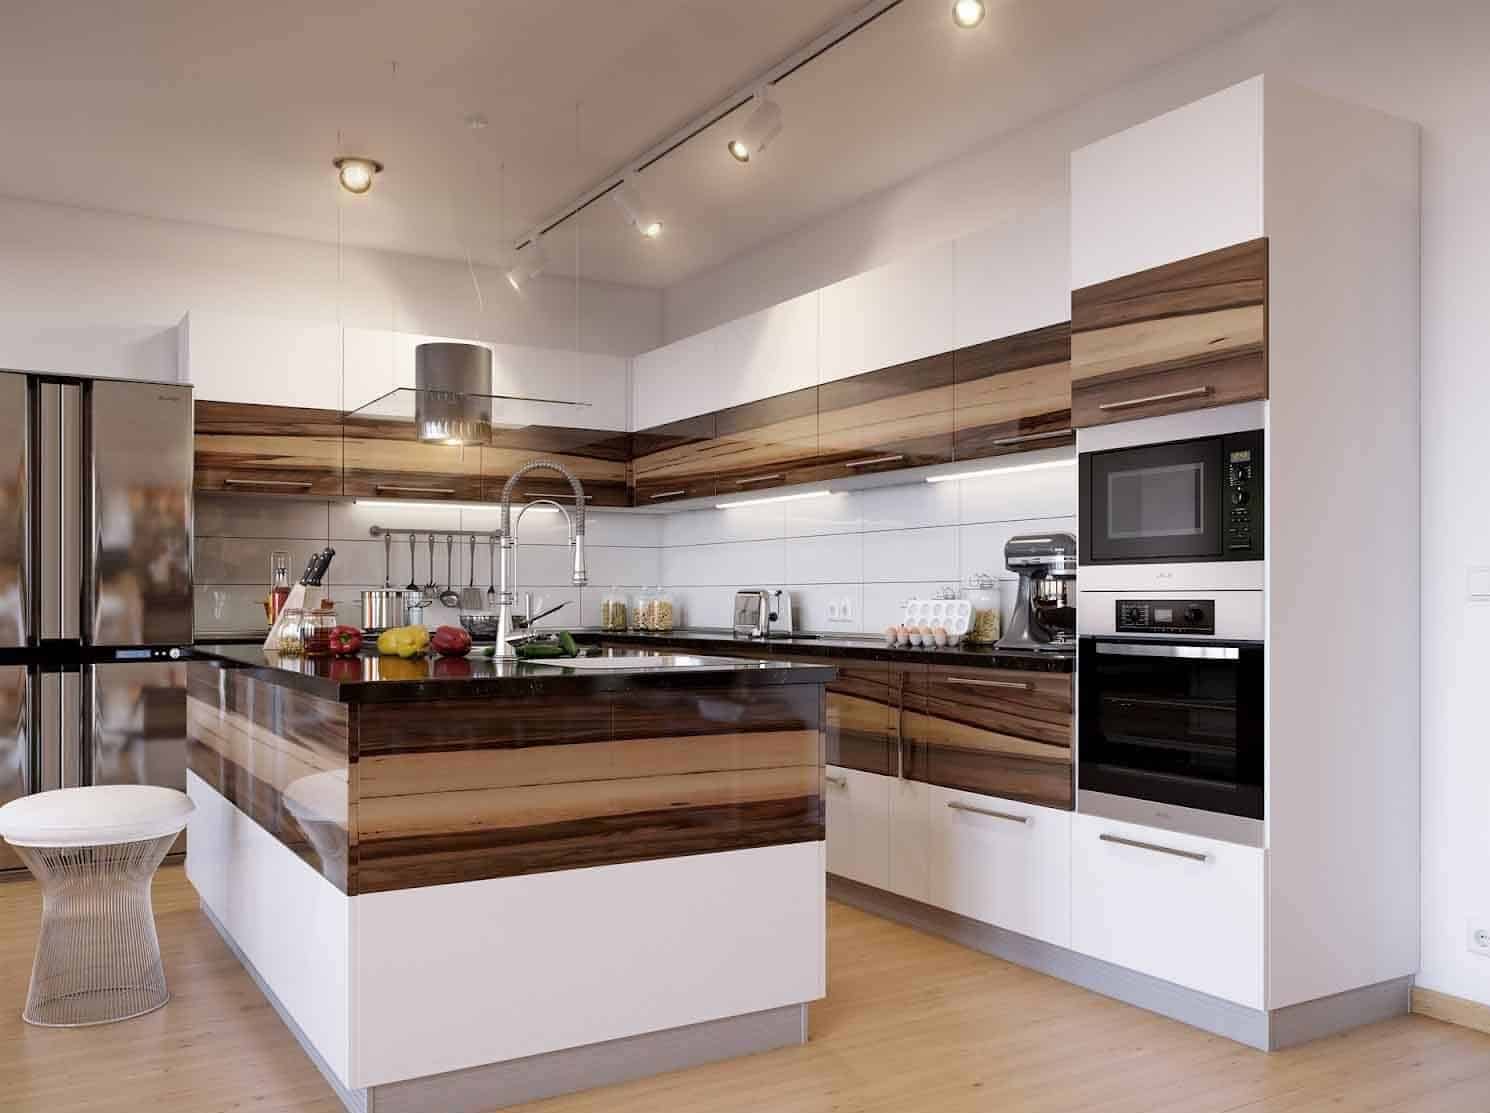 مطابخ مودرن بمفهوم تصميمي جديد لما بعد الحداثة Ultra Modern Kitchens